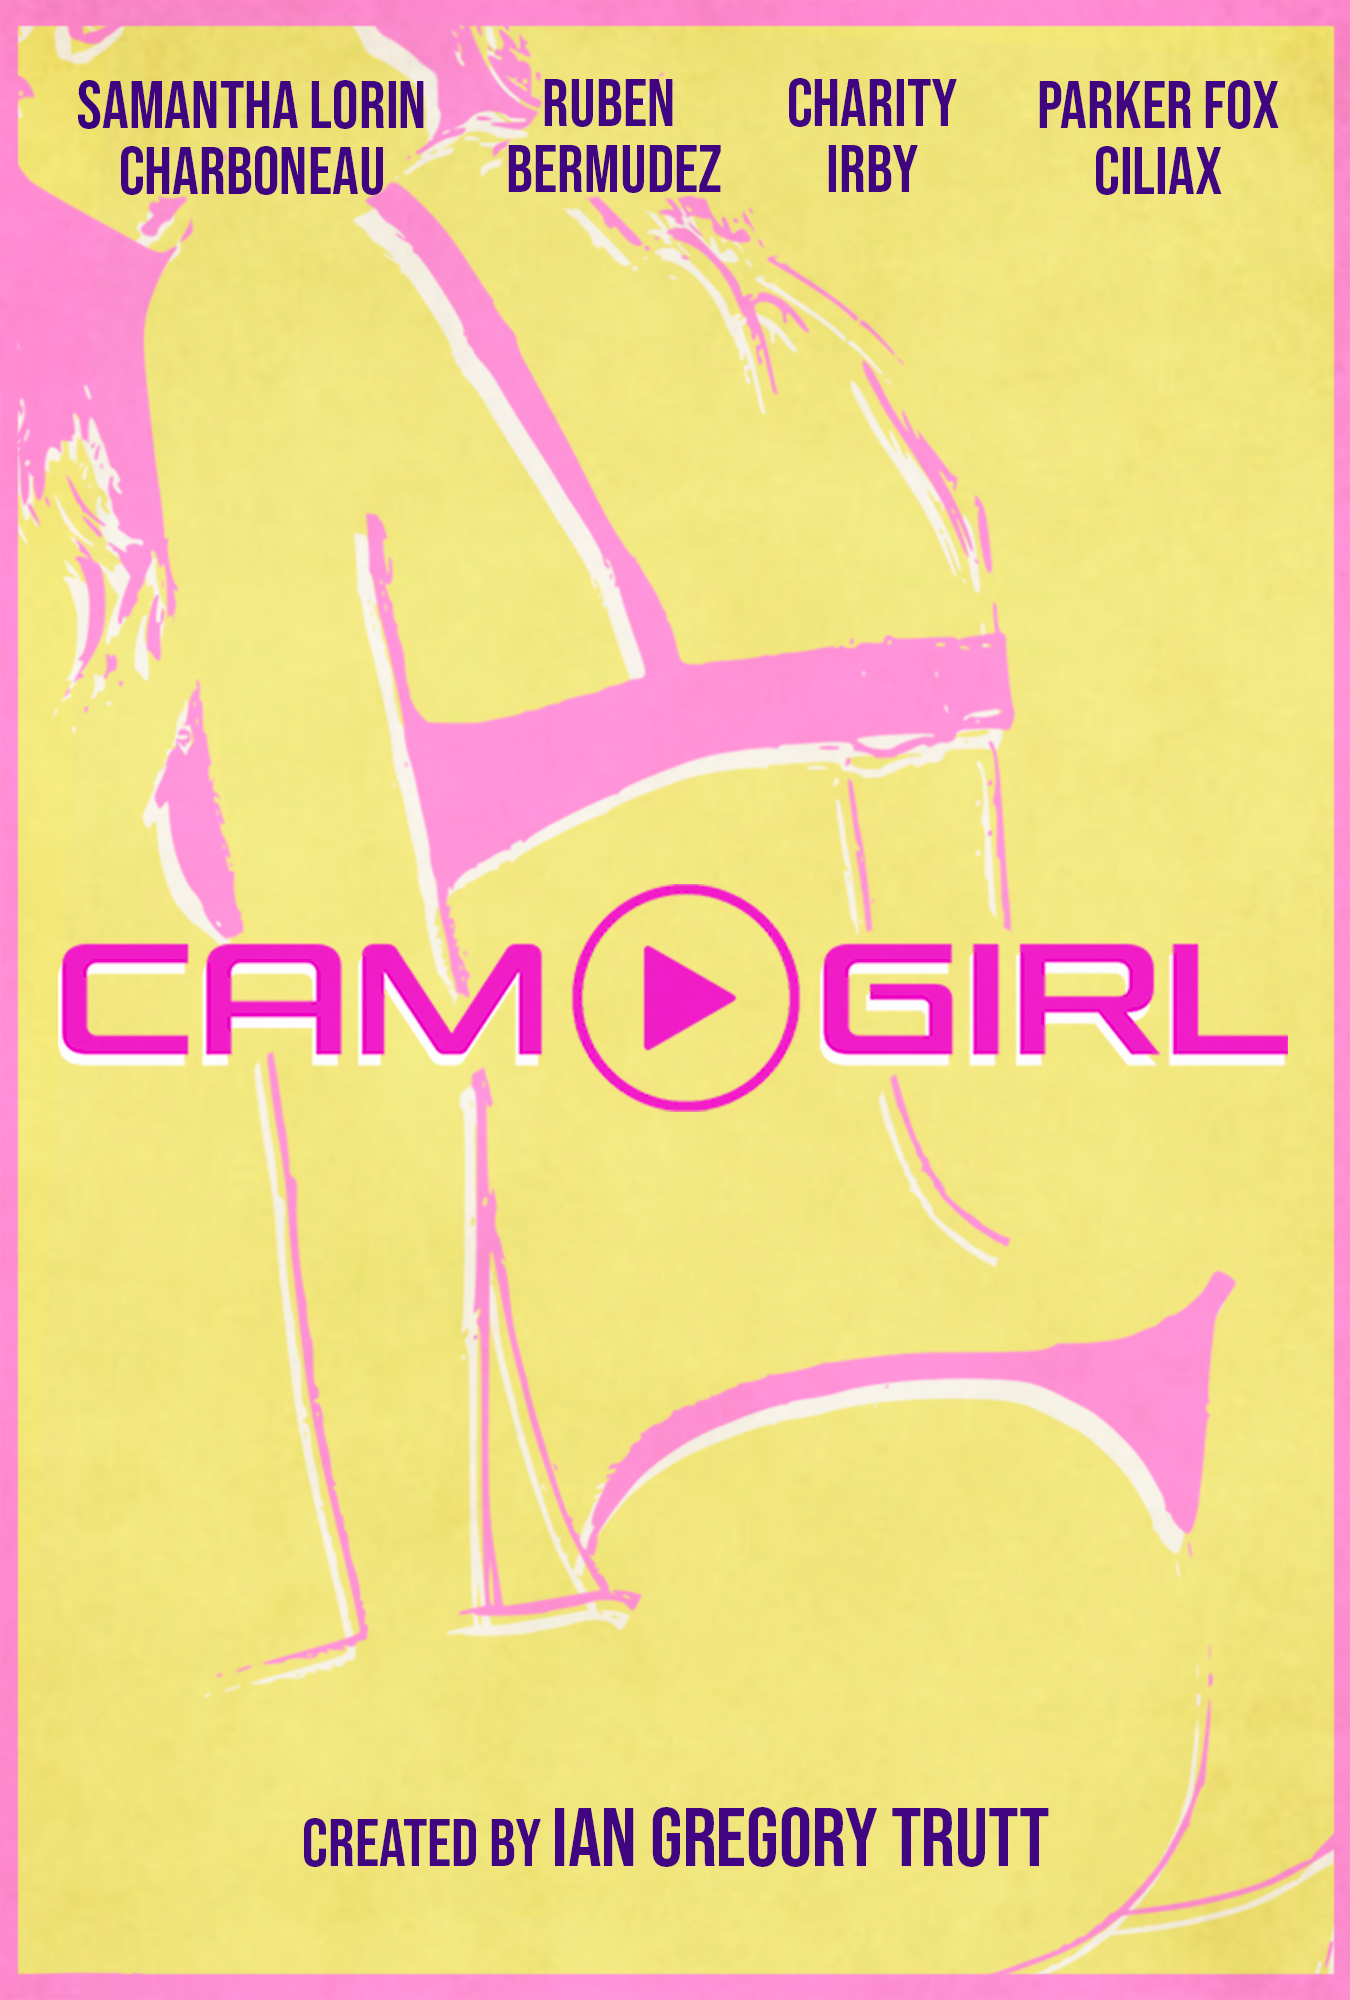 Cam Girl